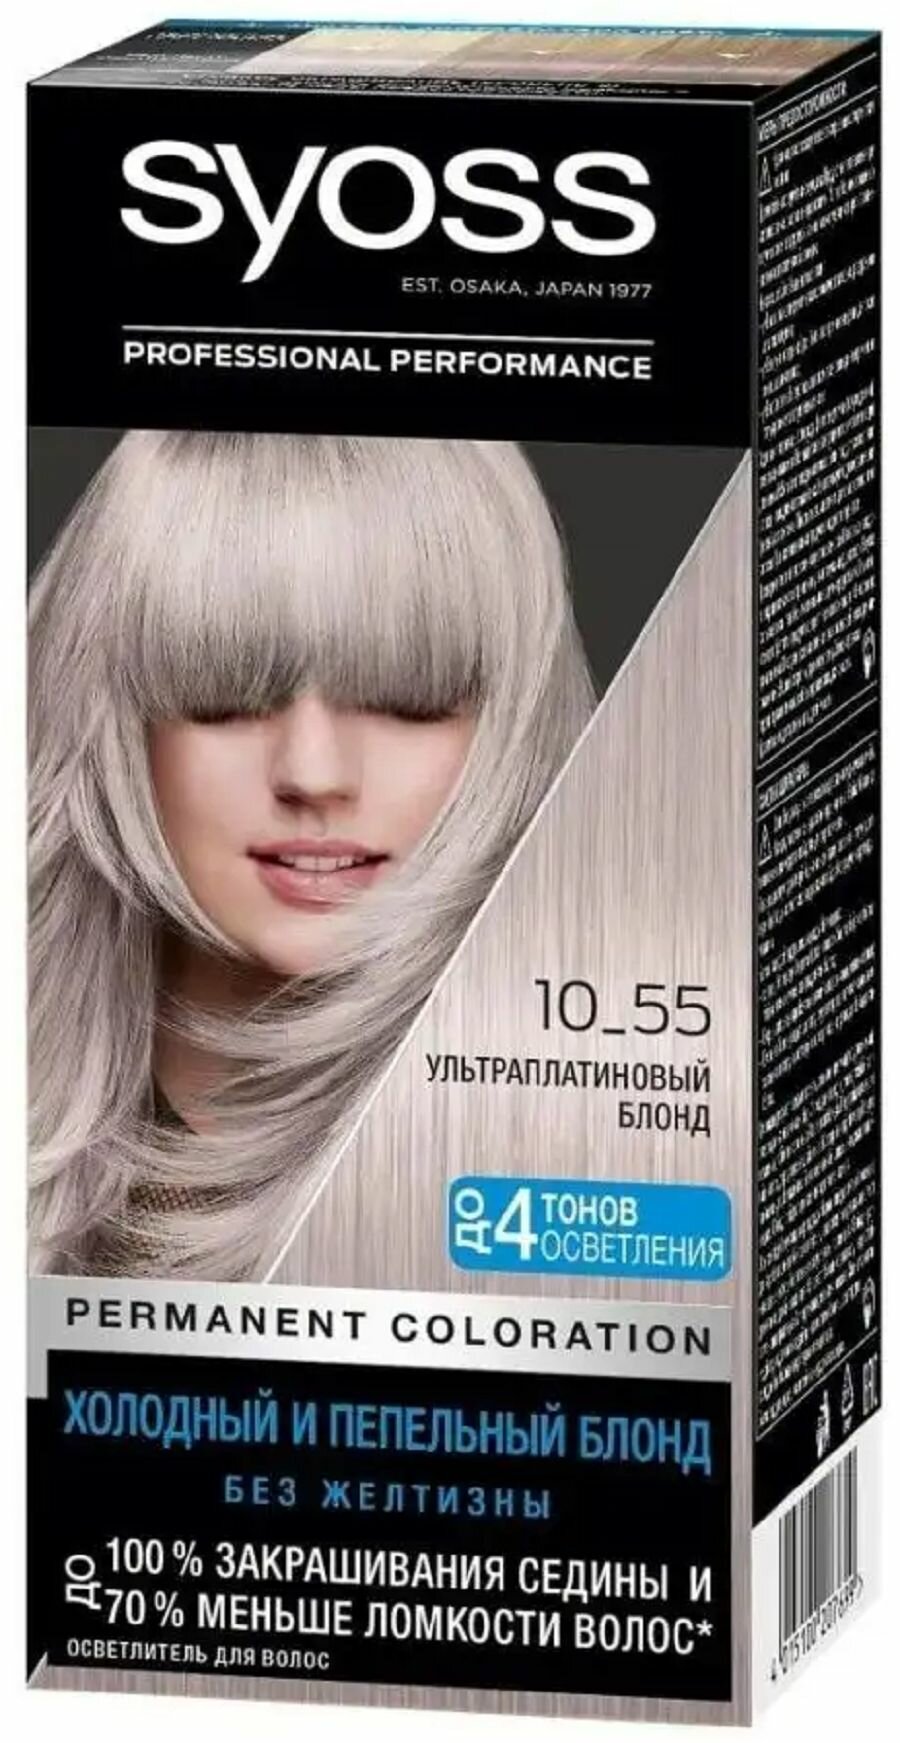 Syoss Крем краска для волос стойкая, 10-55, Ультраплатиновый блонд